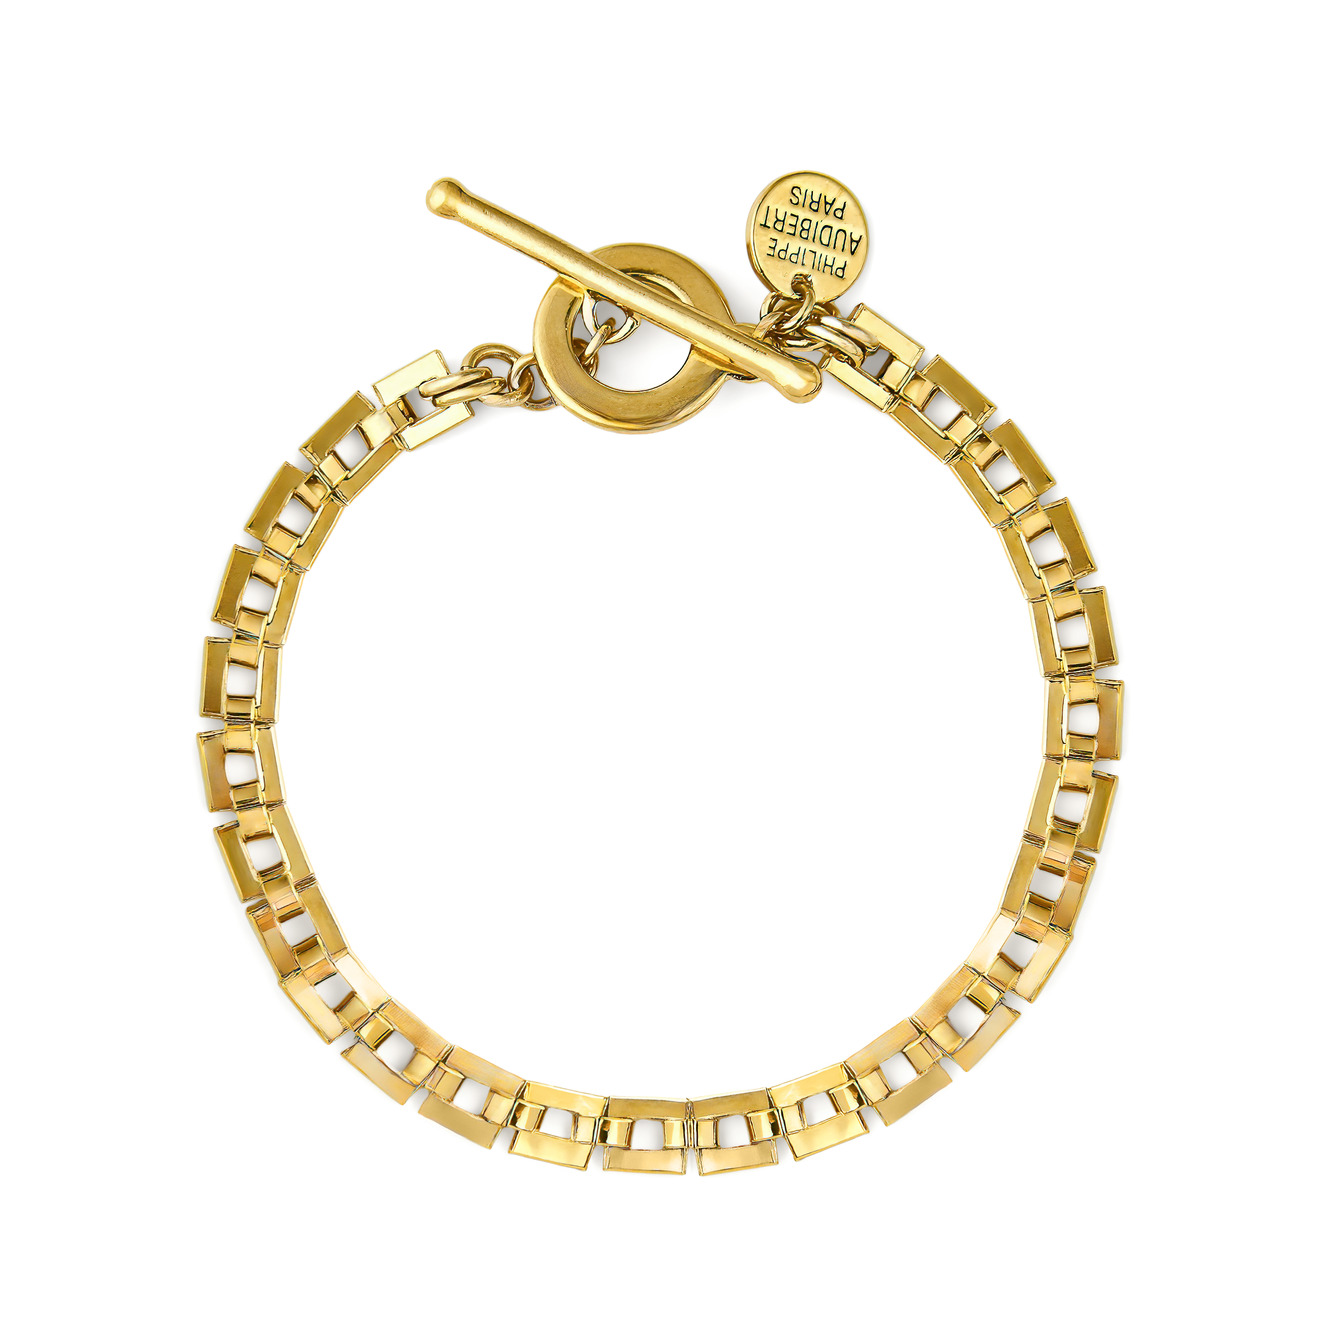 Philippe Audibert Позолоченный браслет-цепь Avner с квадратными звеньями philippe audibert позолоченное кольцо цепь avner